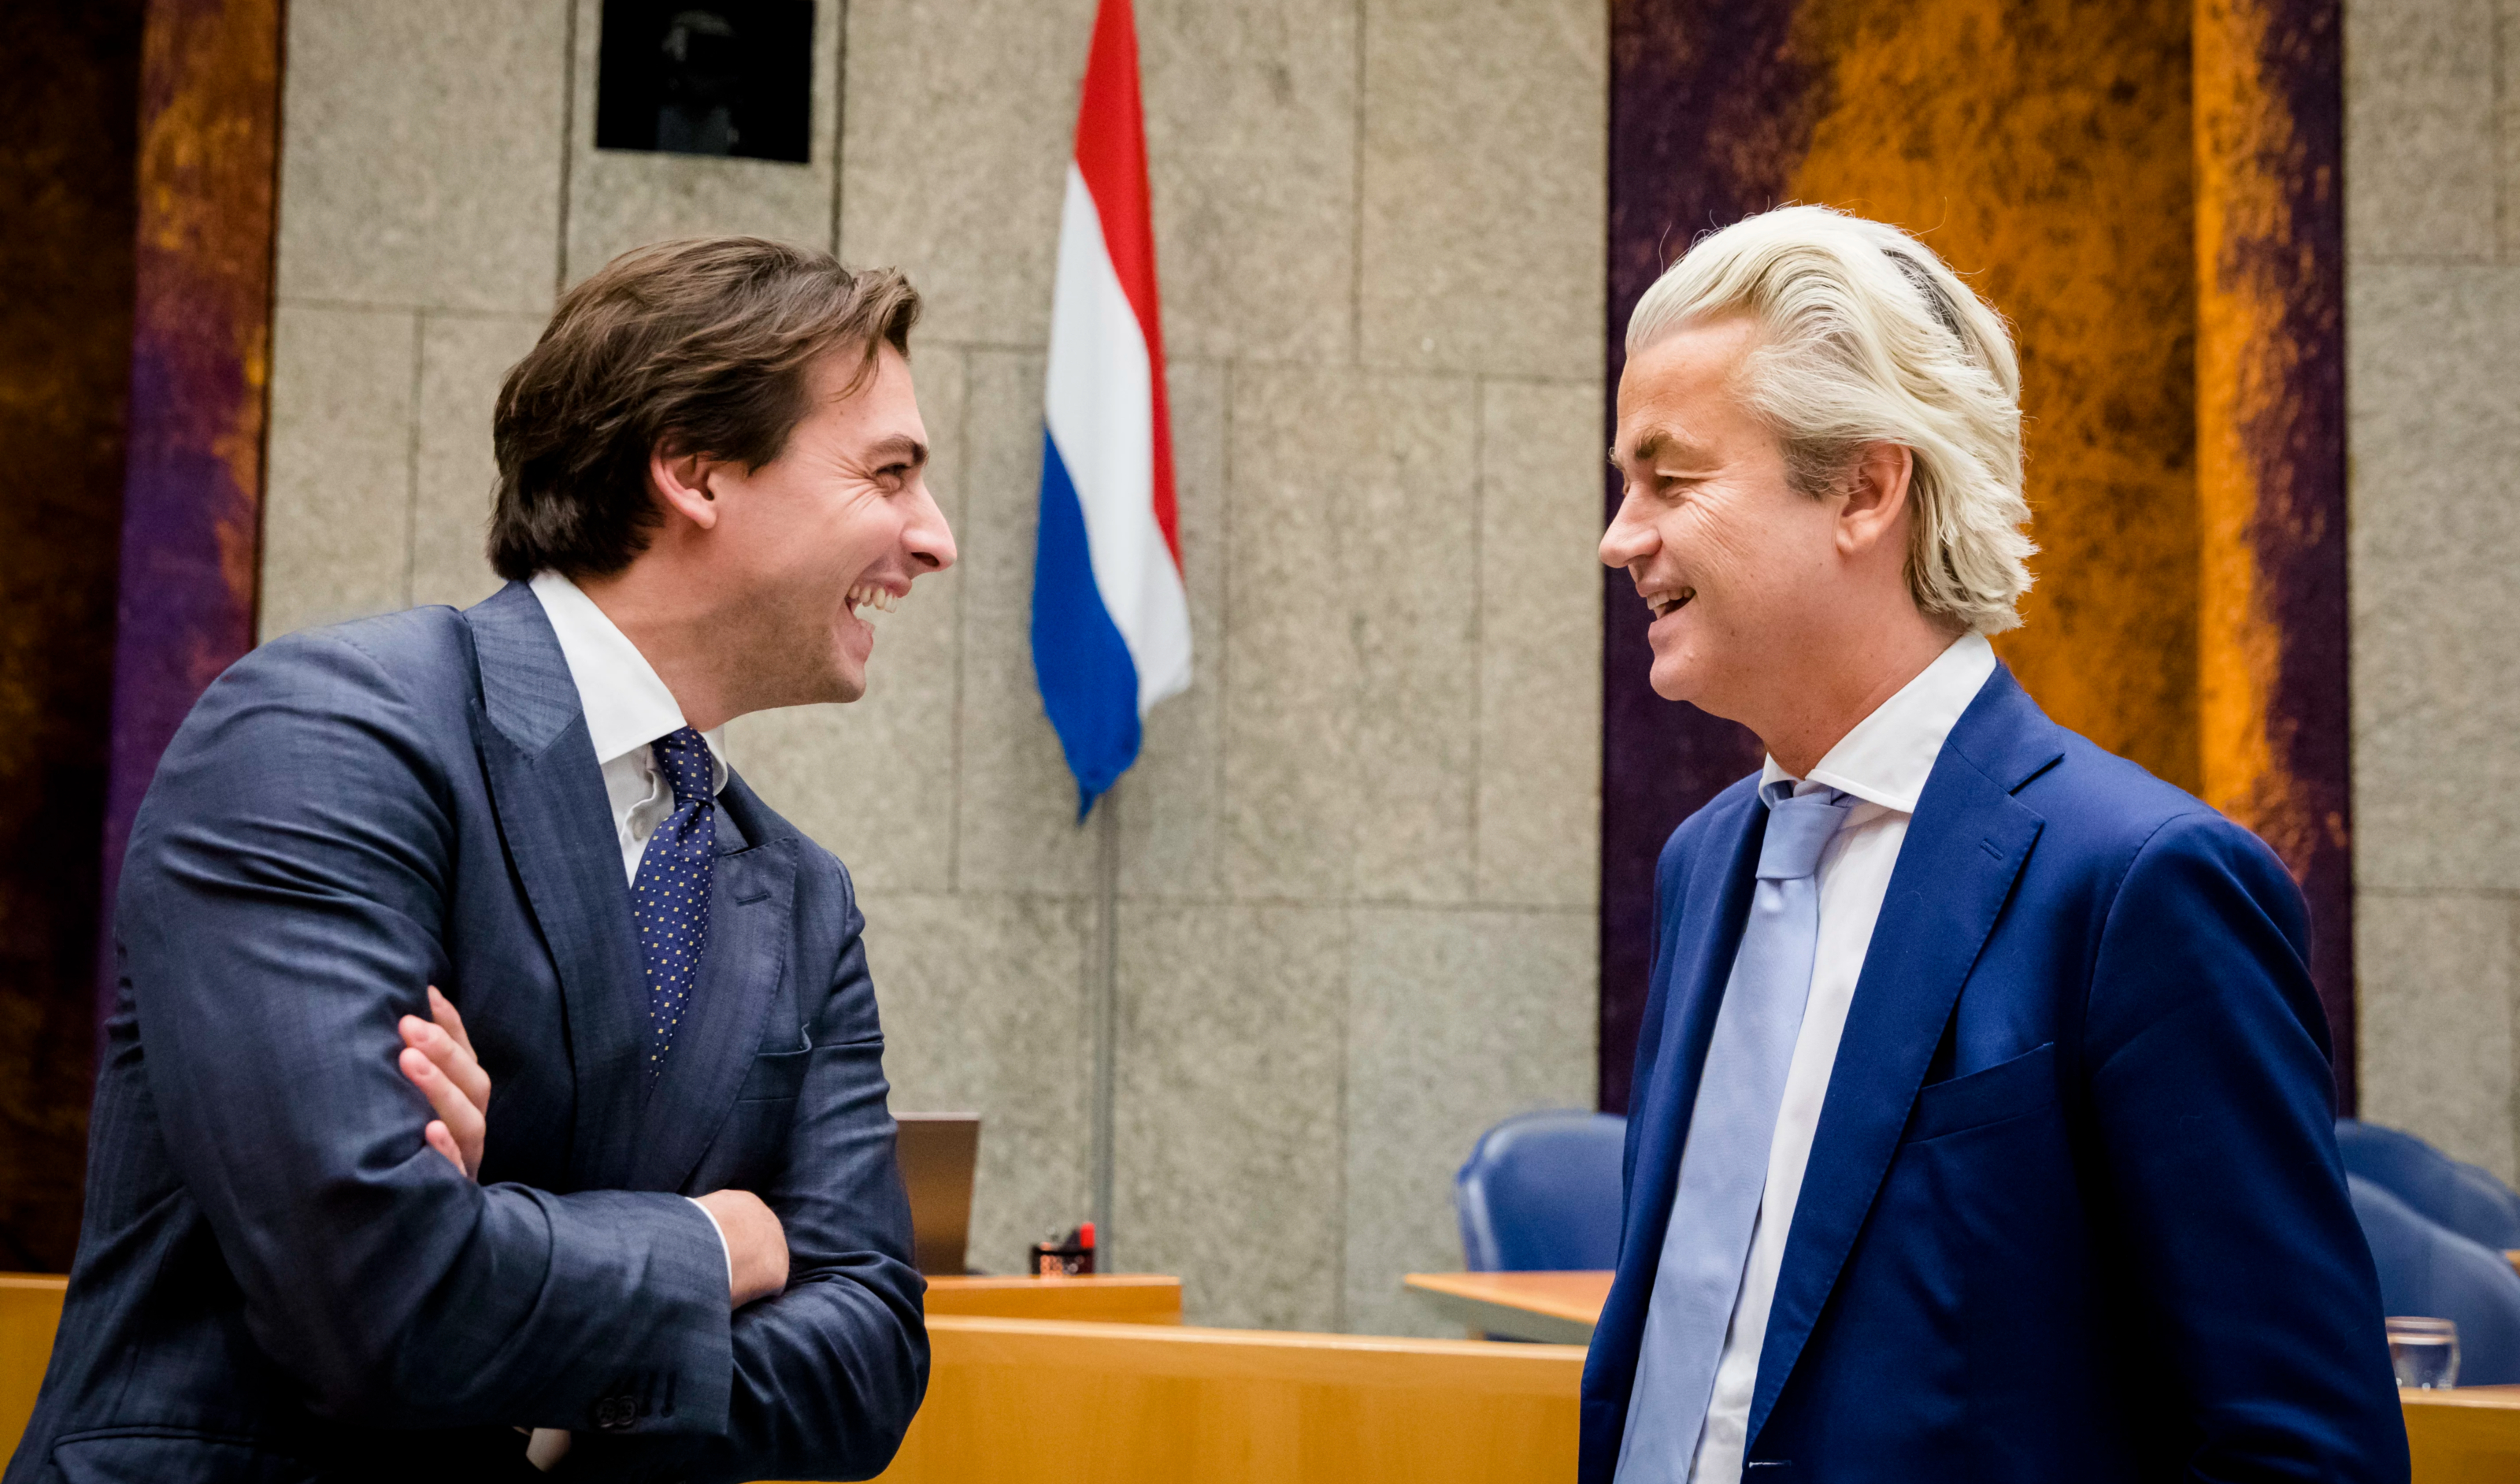 Thierry Baudet en Geert Wilders willen beide een Nexit, slecht idee zegt SER